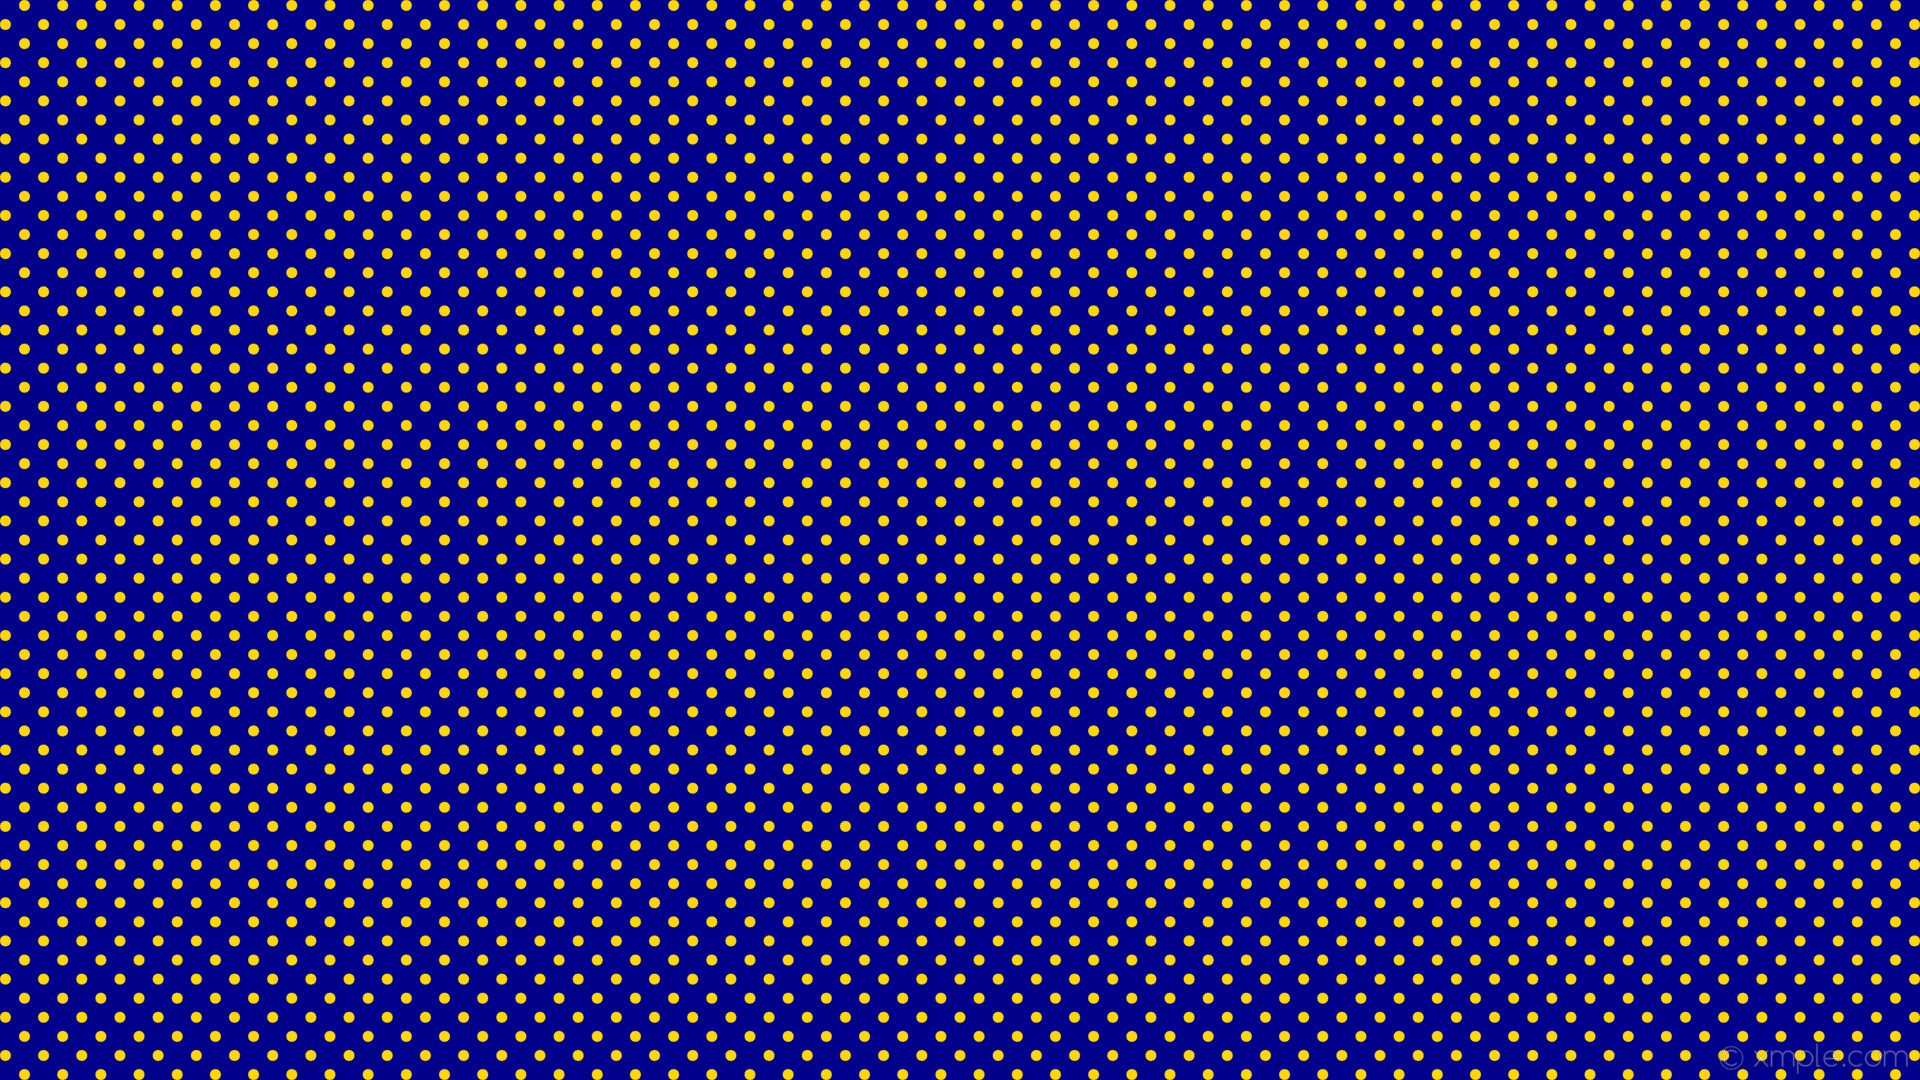 1920x1080 wallpaper yellow spots blue polka dots dark blue gold #00008b #ffd700 315Â°  11px